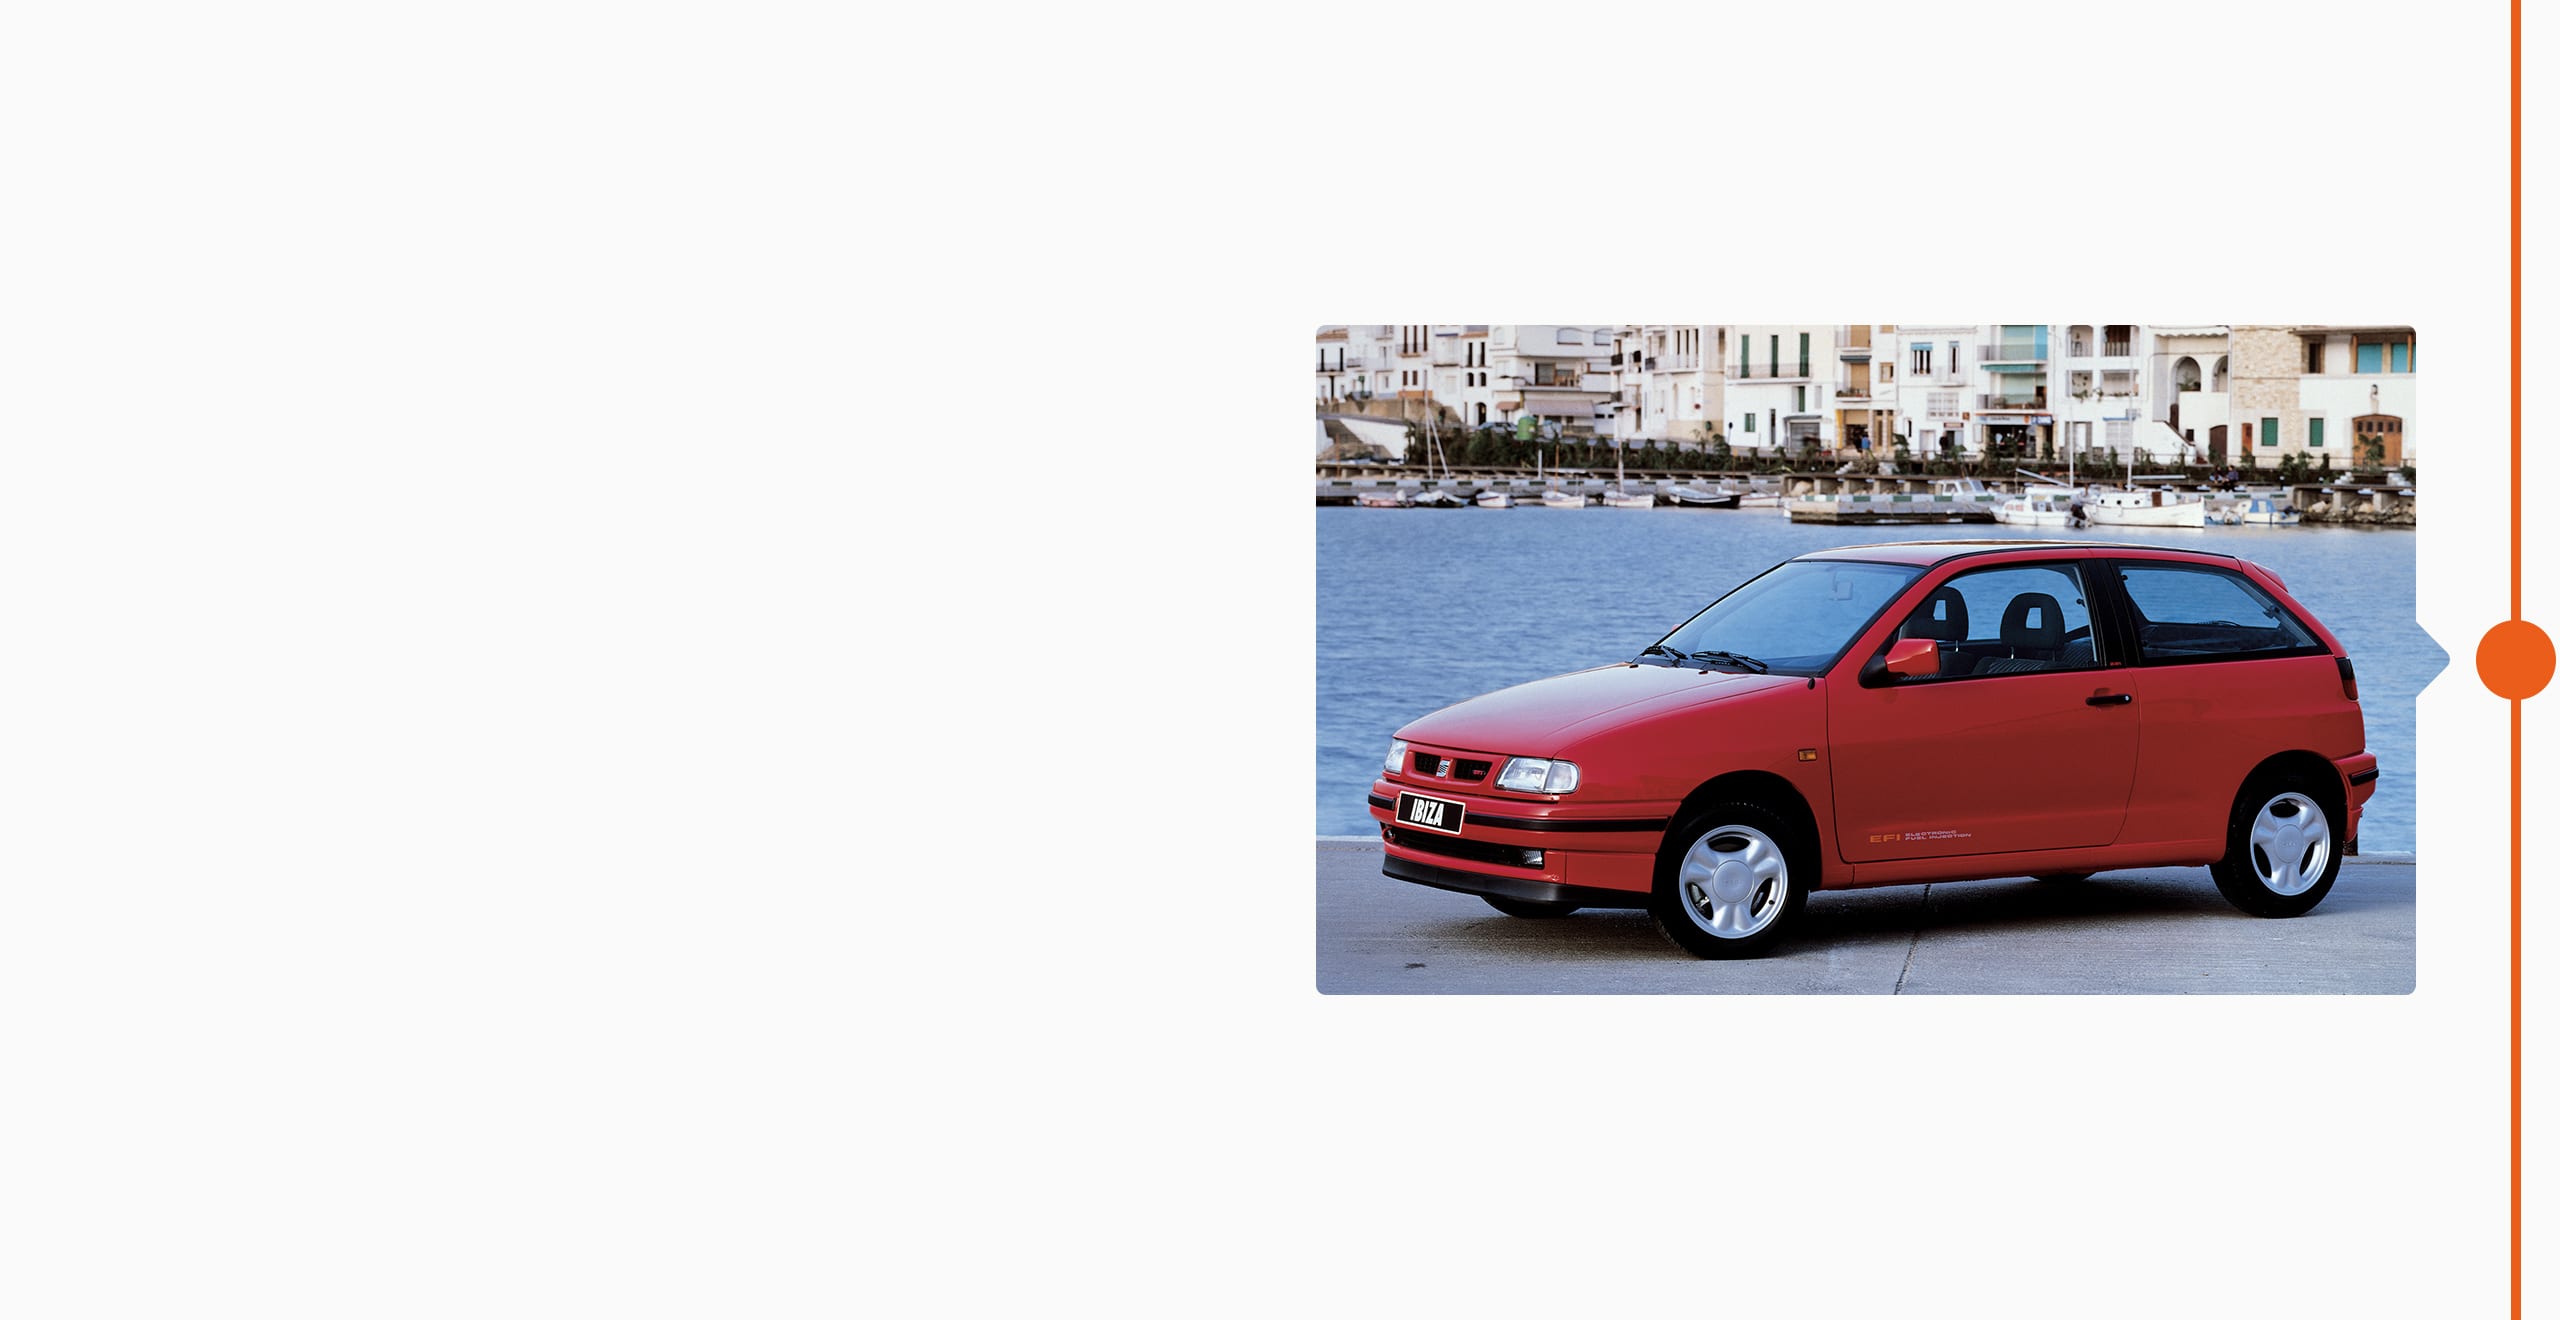 Histoire de la marque SEAT 1993 - SEAT Cordoba voiture dans la nouvelle usine de Martorell